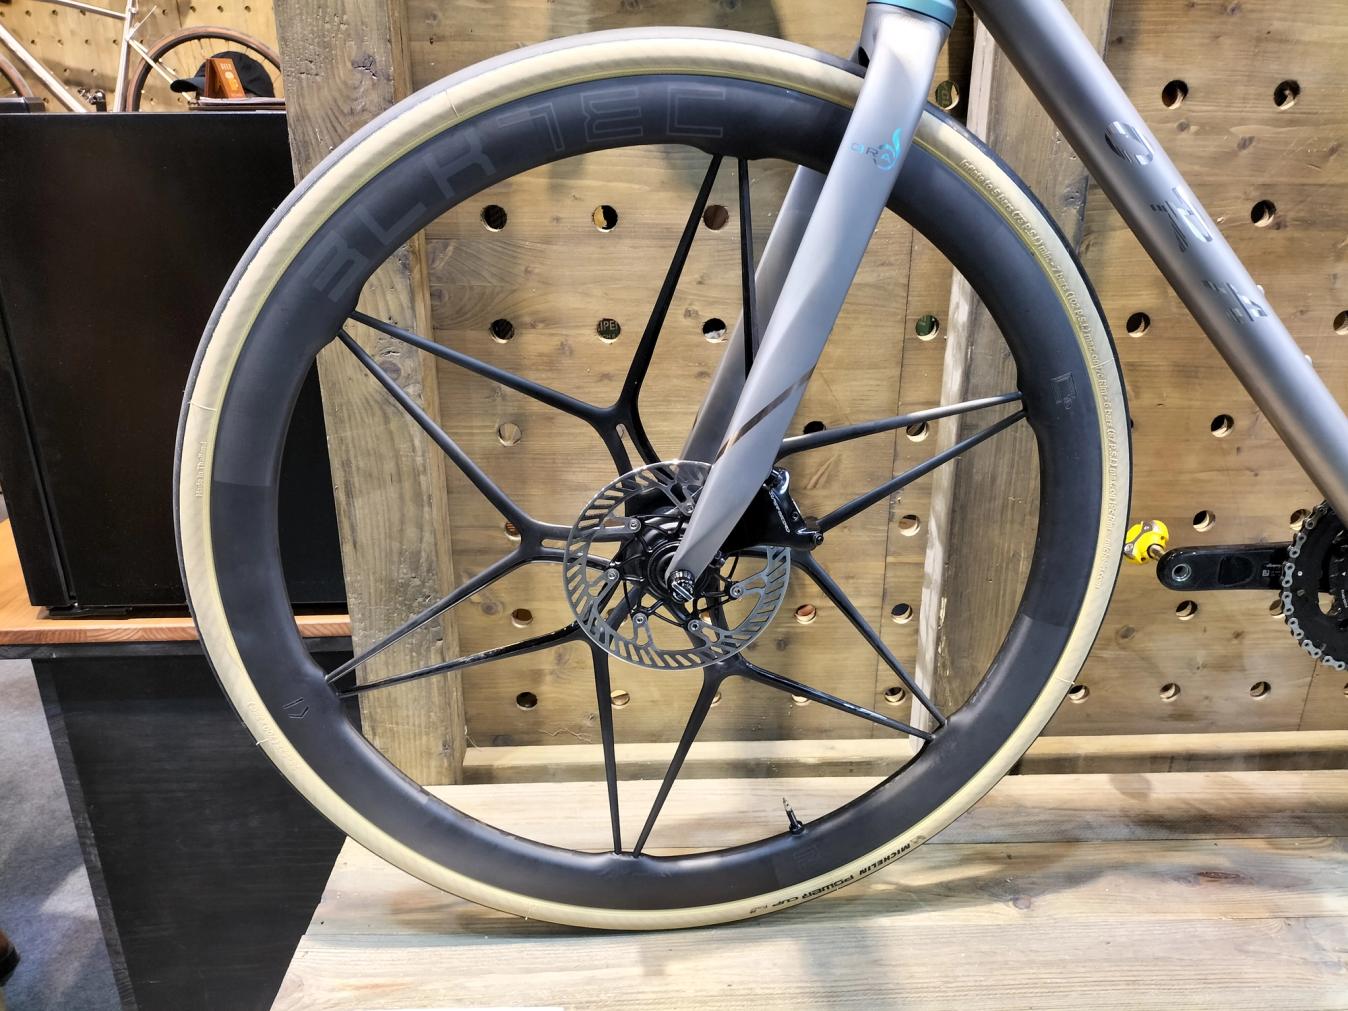 The wheels on Ora's titanium bike